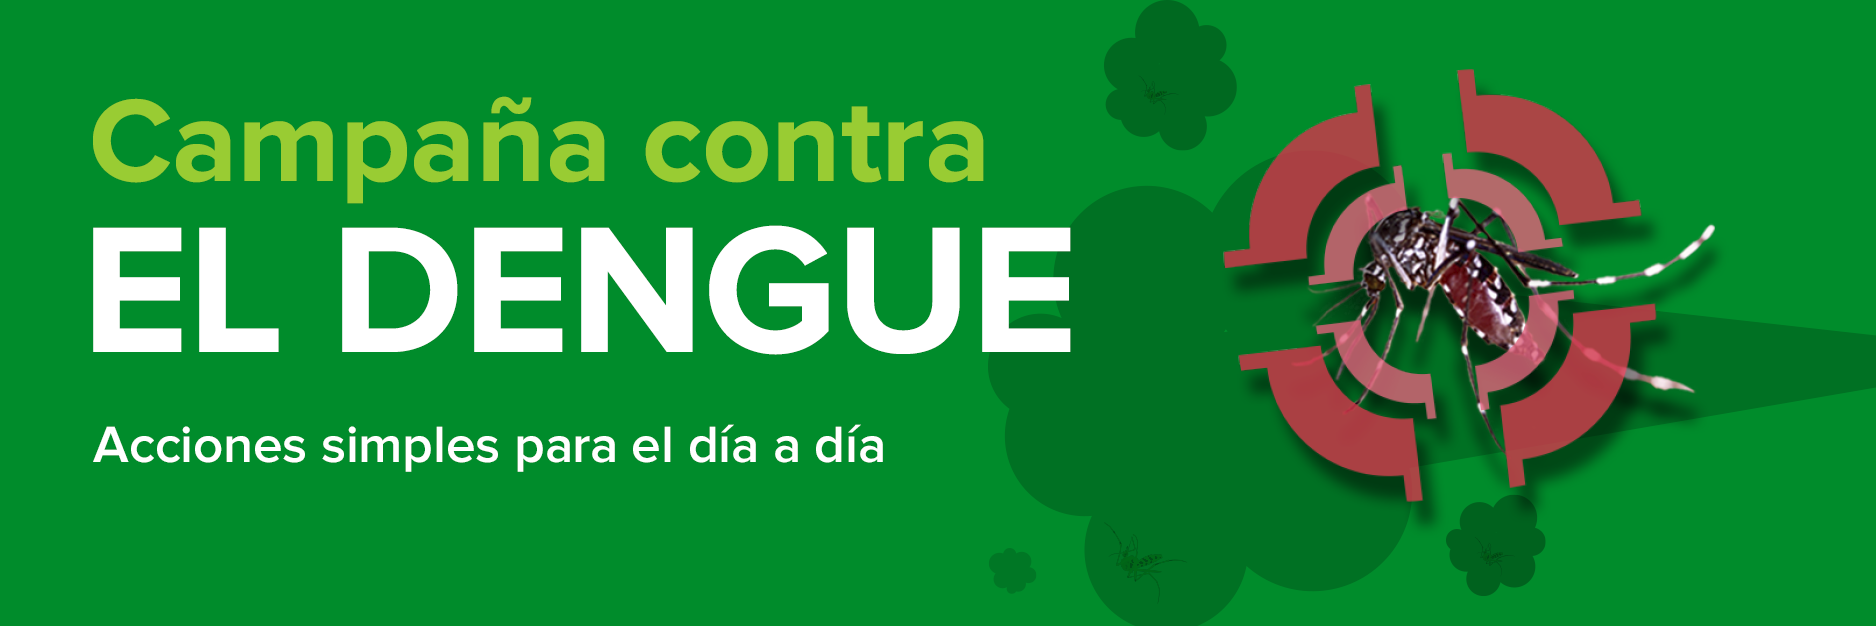 1.3 Campaña contra el dengue 